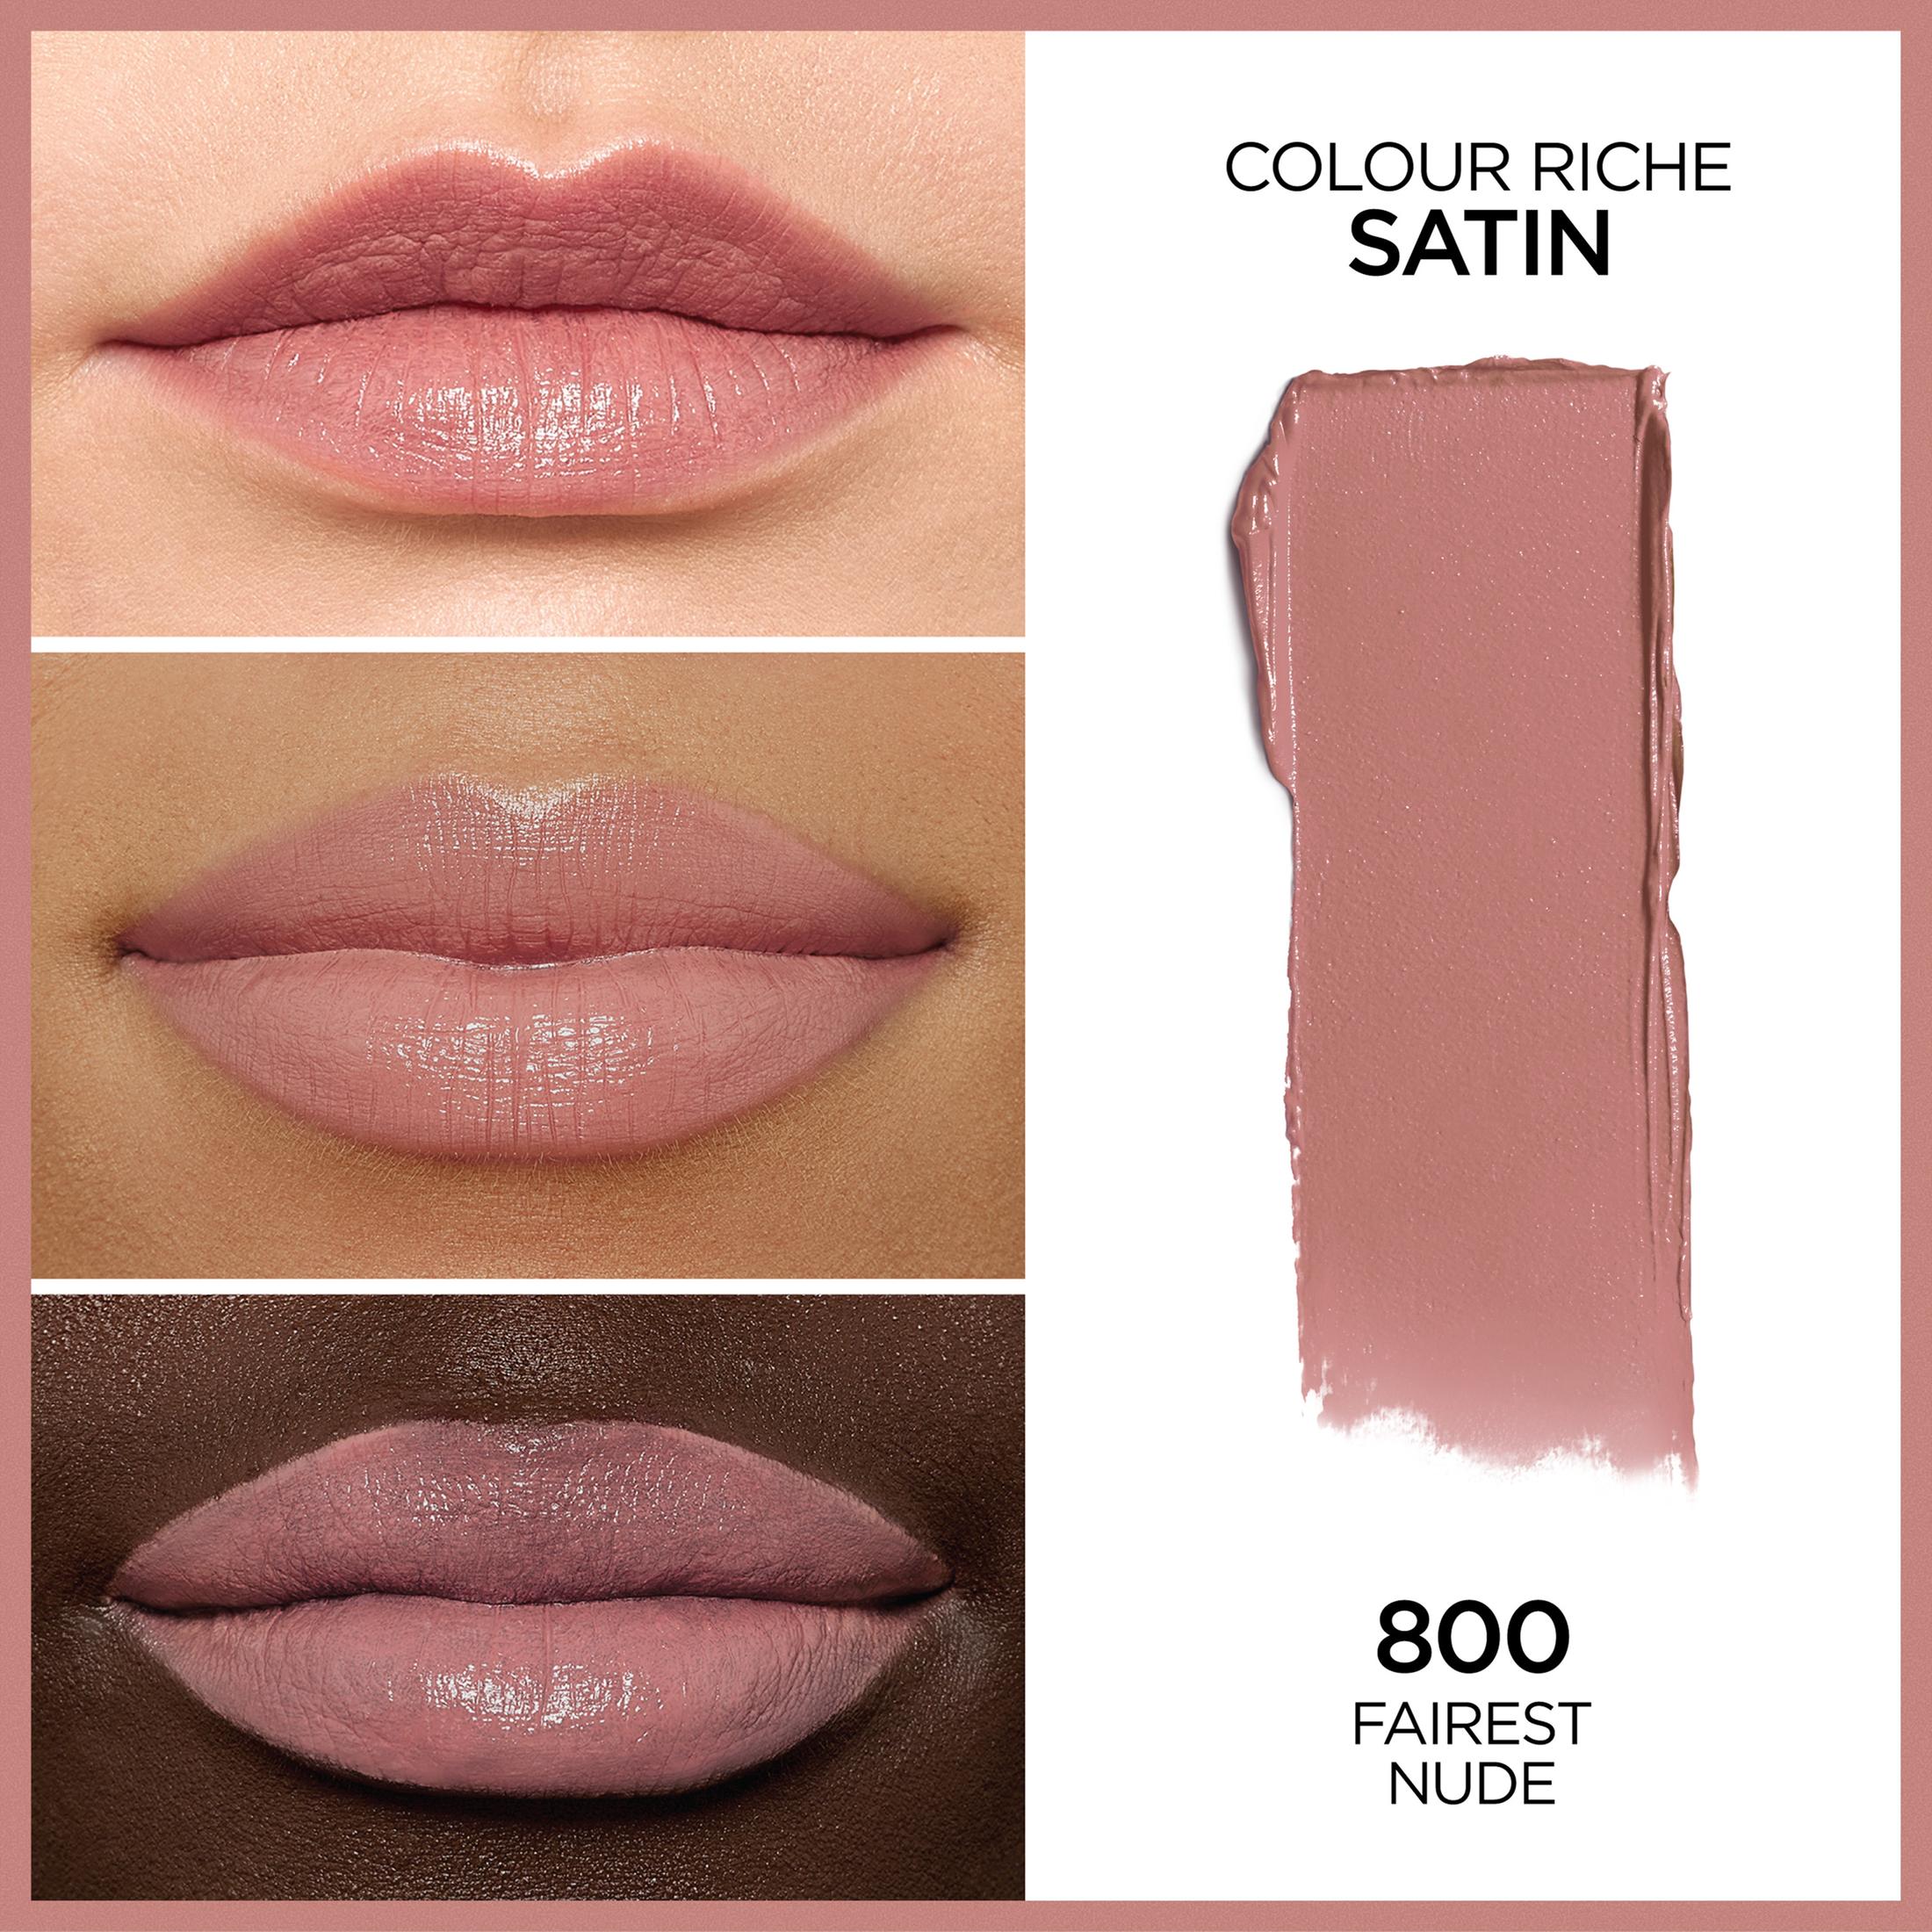 L'Oreal Paris Colour Riche Original Satin Lipstick for Moisturized Lips, 800 Fairest Nude - image 2 of 5